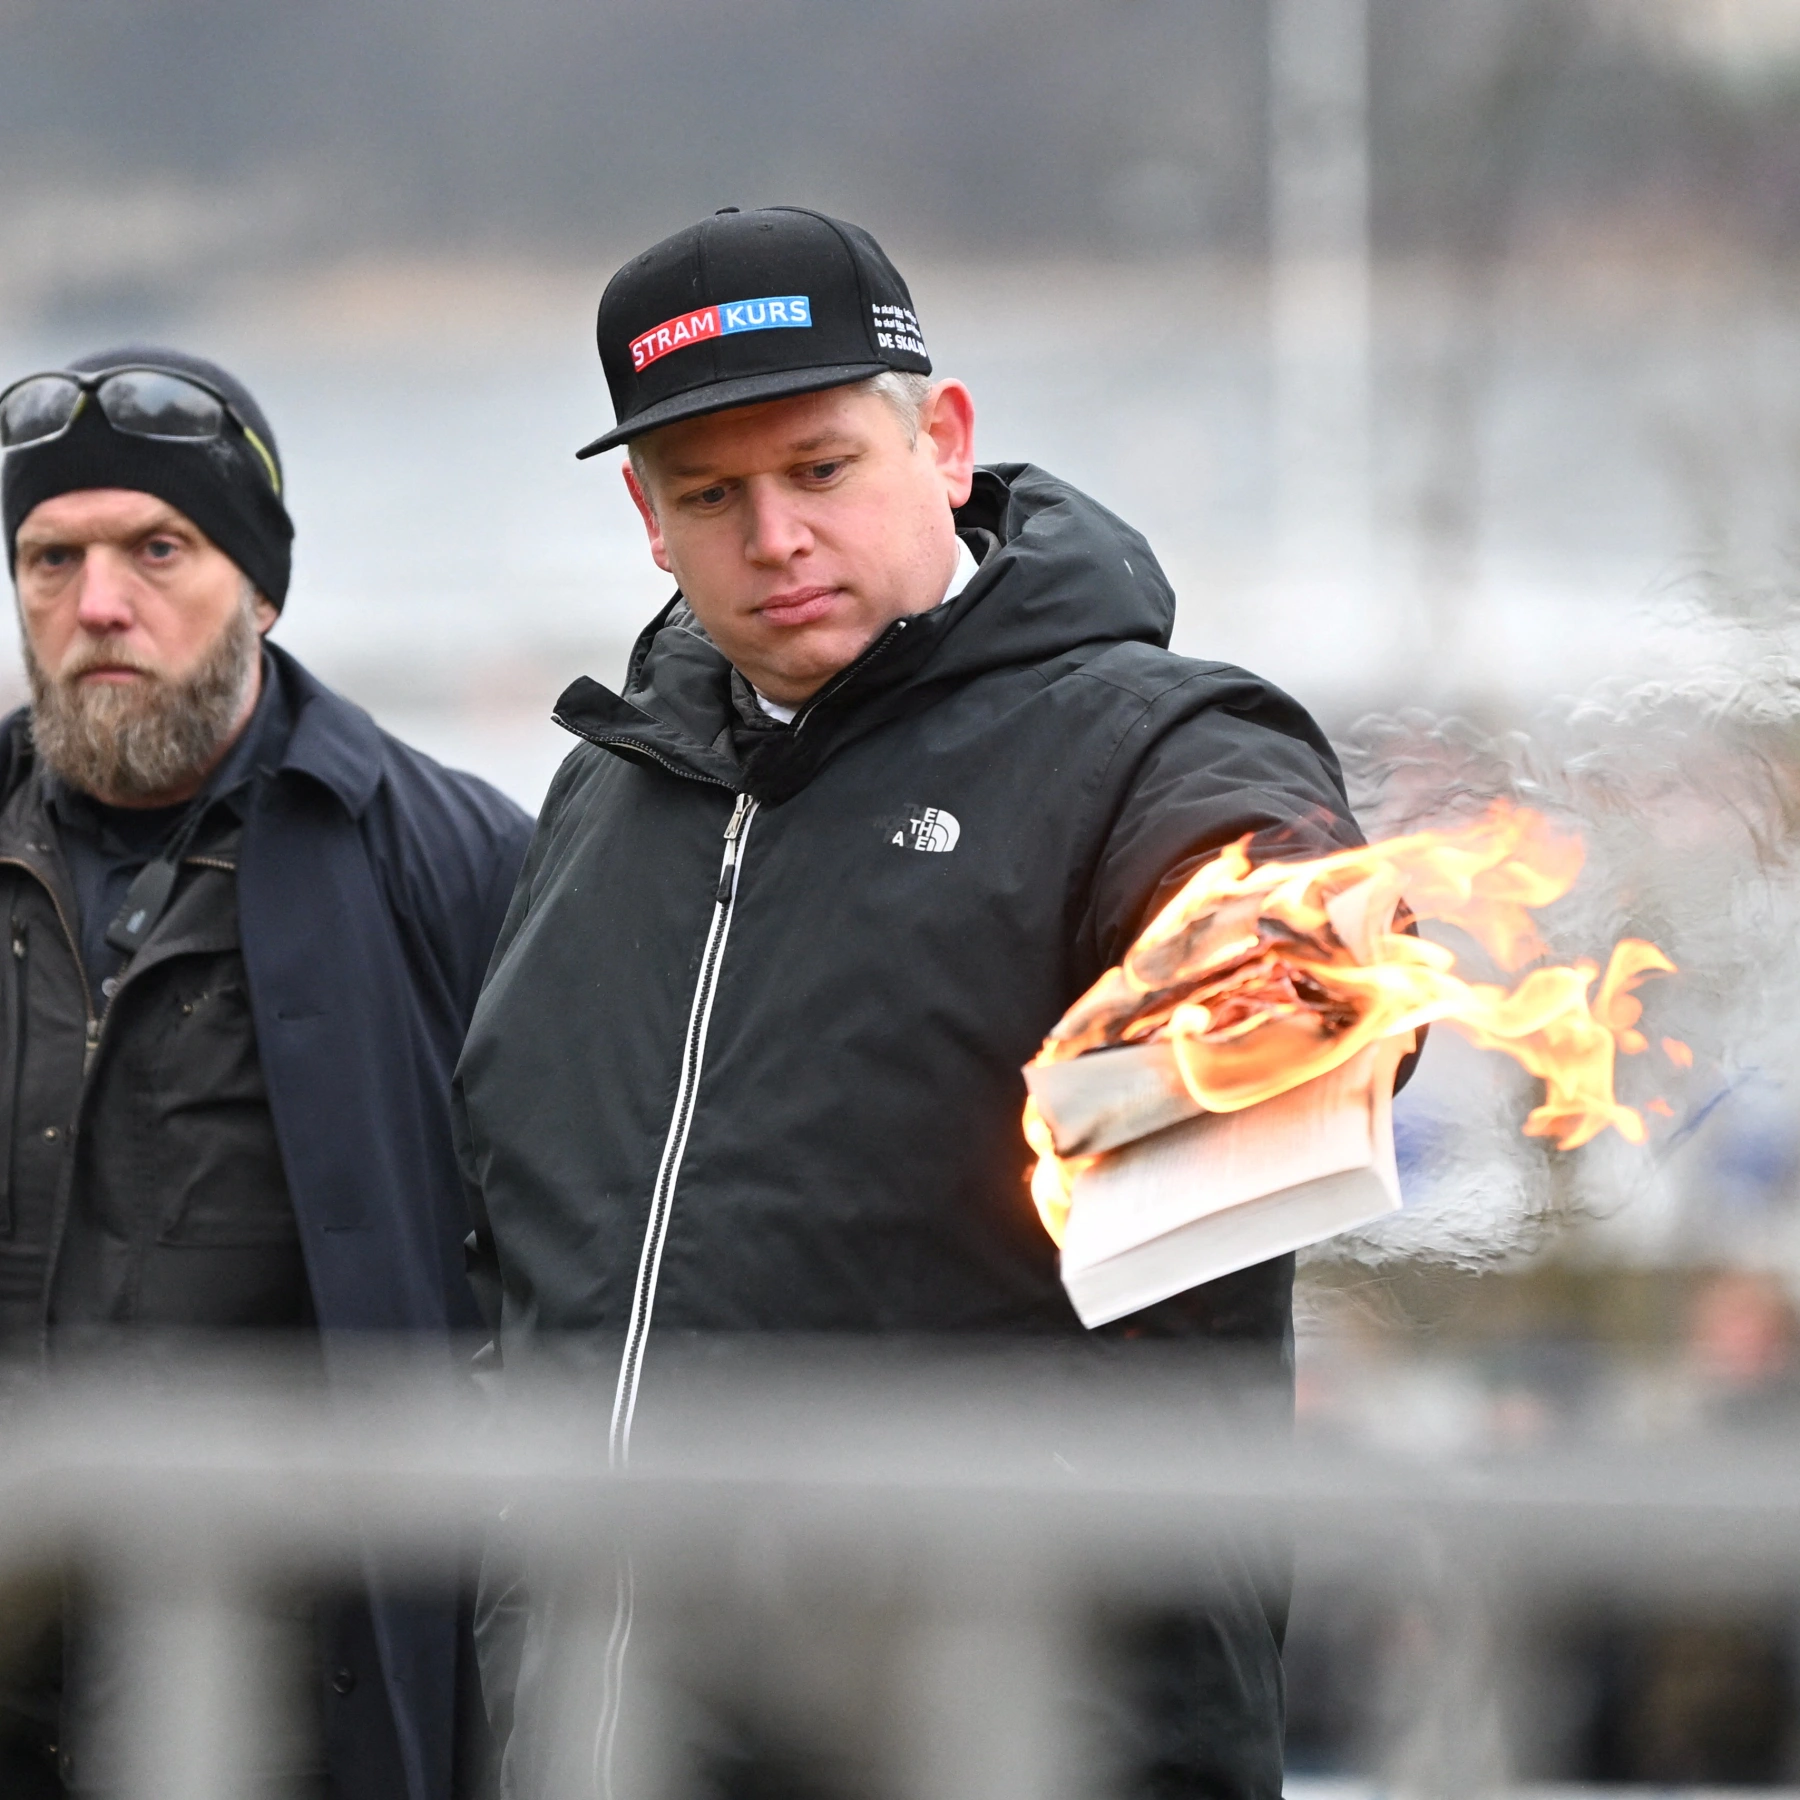 سويدي يمزق المصحف الشريف ويدوس على صفحاته ثم يحرقه في أول أيام عيد الأضحى